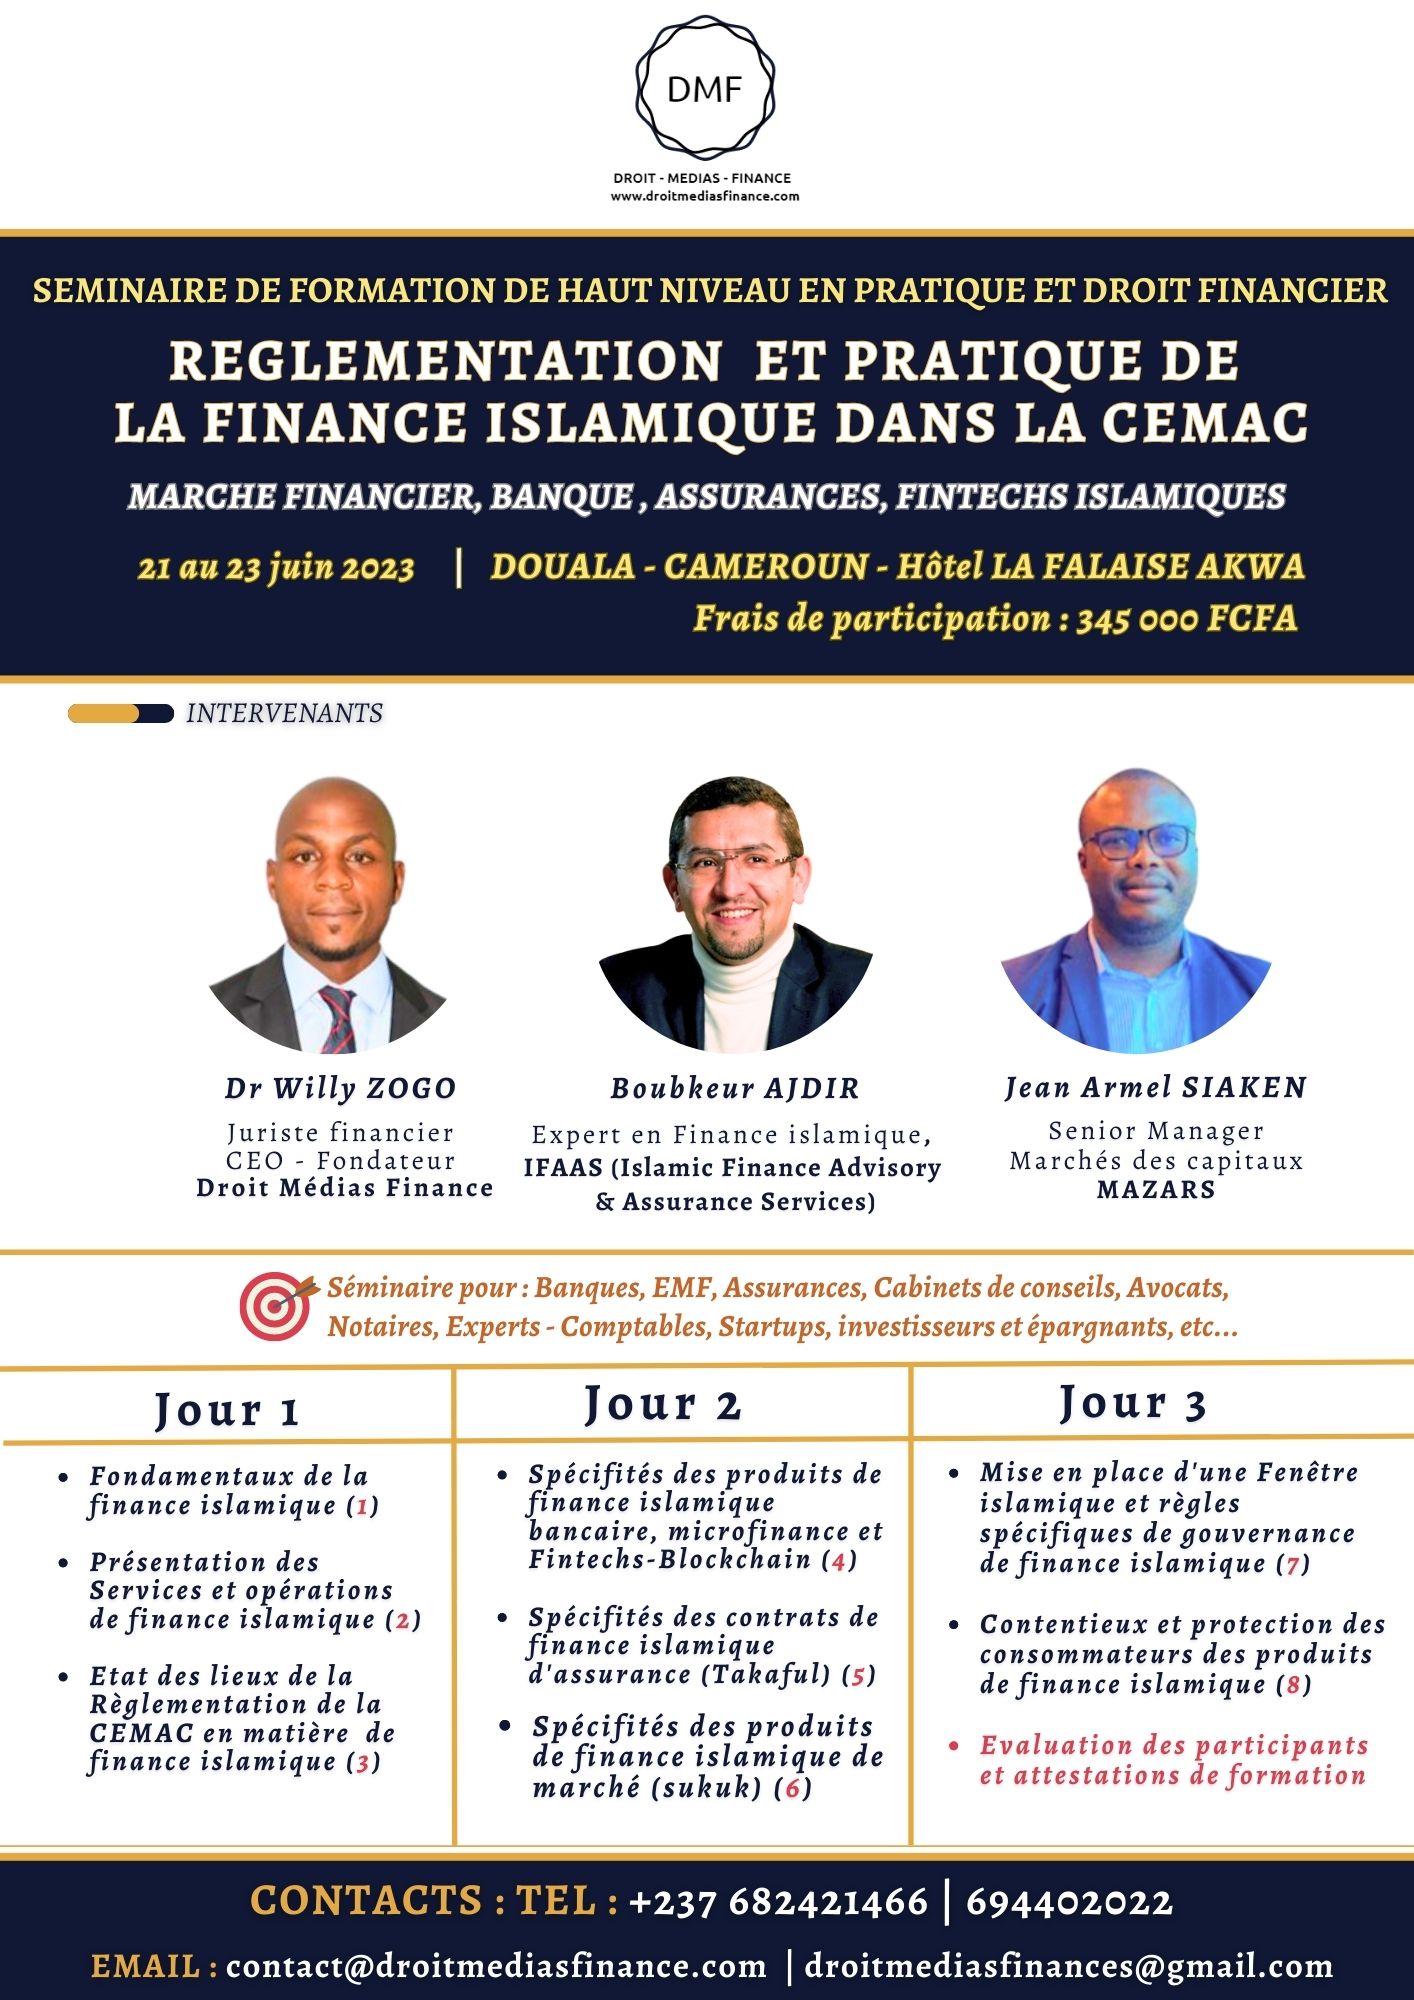 FORMATION - FINANCE ISLAMIQUE : Un séminaire organisé sur la finance islamique bancaire, boursière, assurantielle et des Fintechs du 21 au 23 juin 2023 à Douala